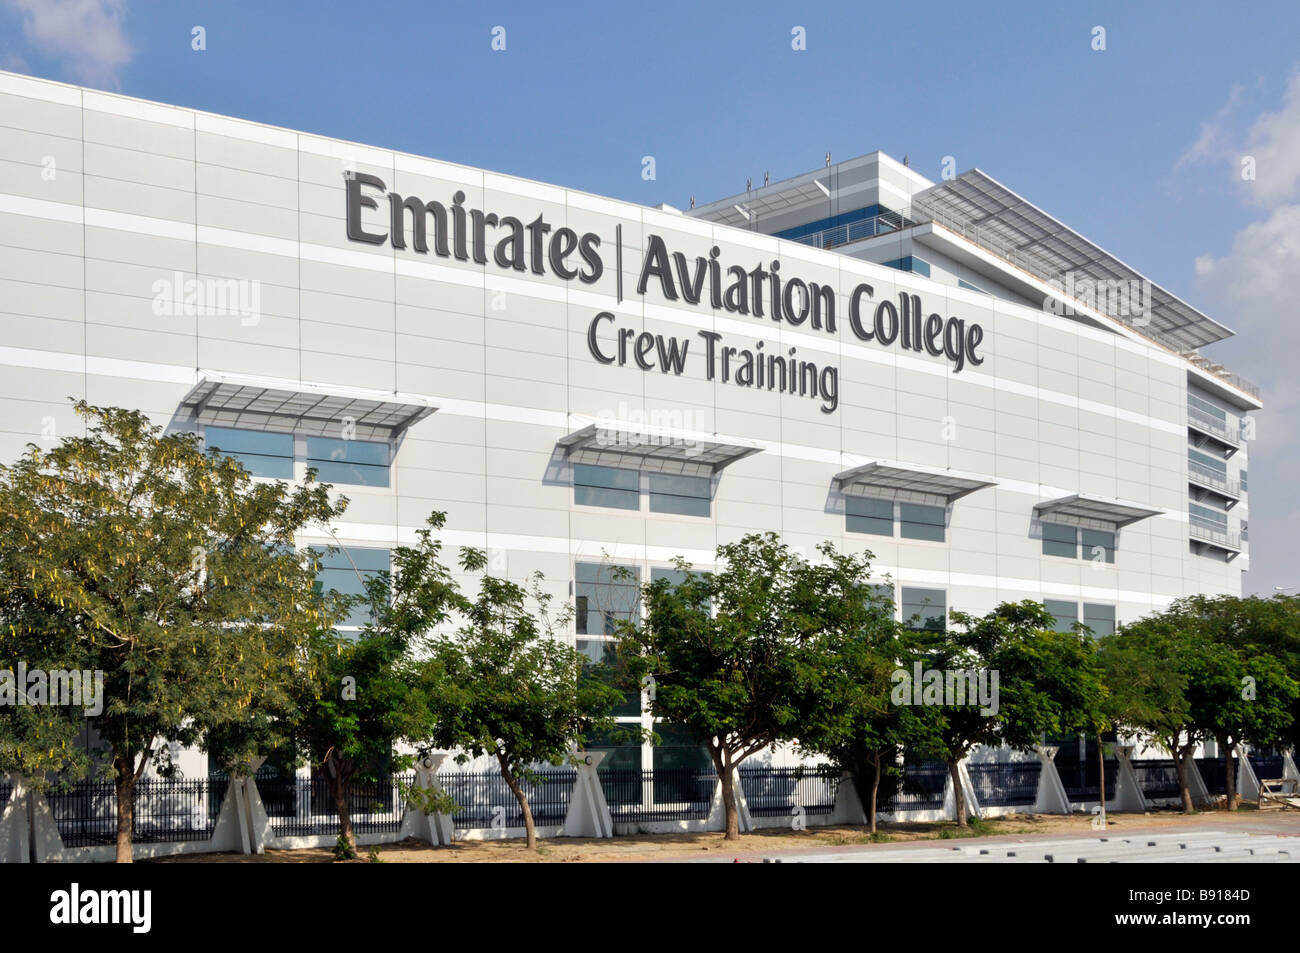 Dubai Emirates Aviation College modernes Gebäude für die zivile Luftfahrt Fluggesellschaft Ausbildung und Ausbildung von Mitarbeitern der Flugbesatzung Vereinigte Arabische Emirate VAE Naher Osten Stockfoto